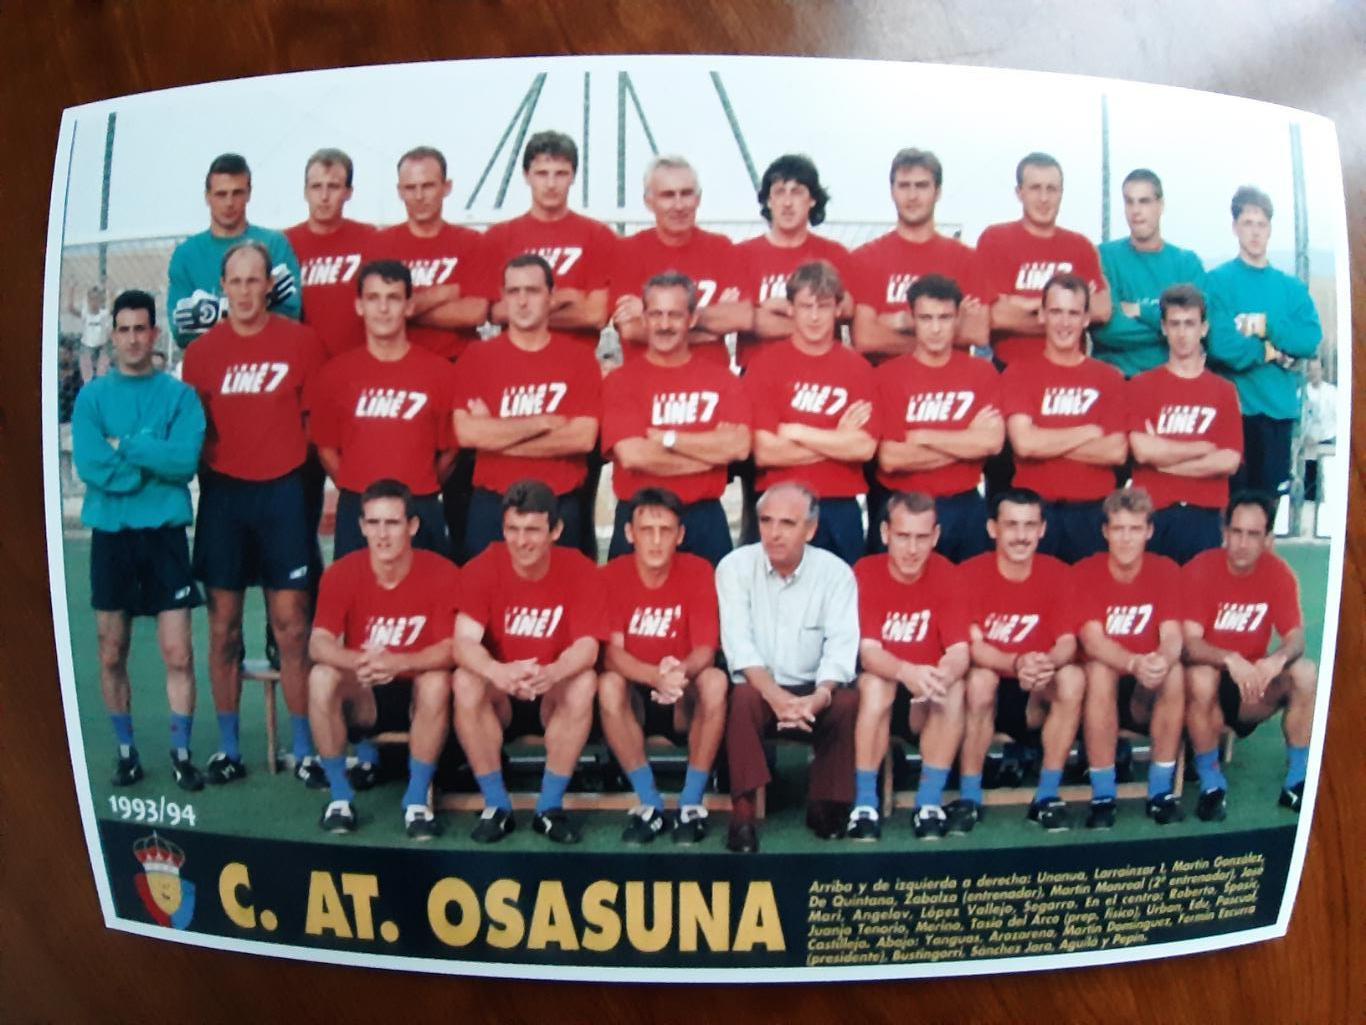 OSASUNA1993/94 (SPAIN)